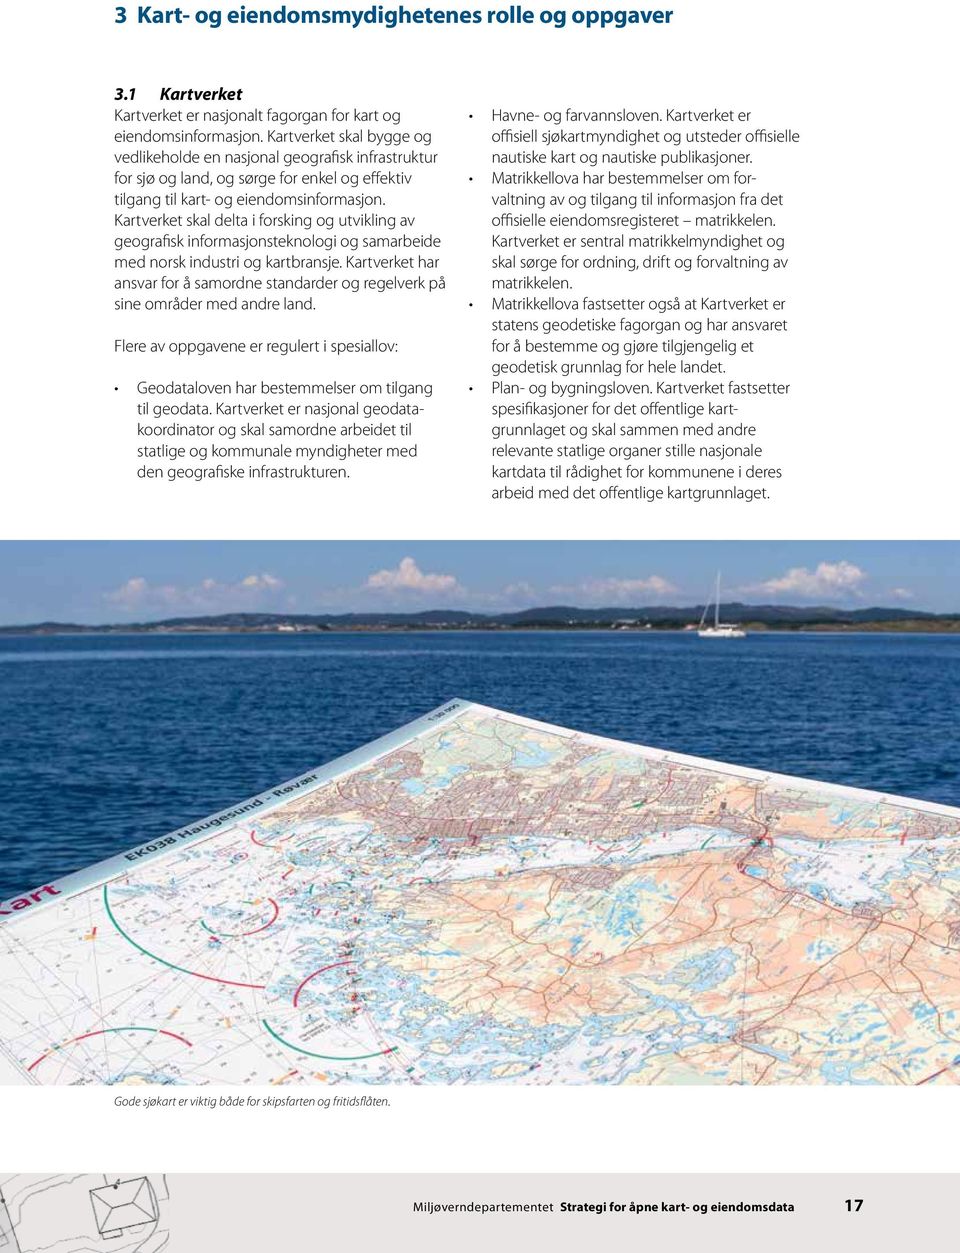 Kartverket skal delta i forsking og utvikling av geografisk informasjonsteknologi og samarbeide med norsk industri og kartbransje.